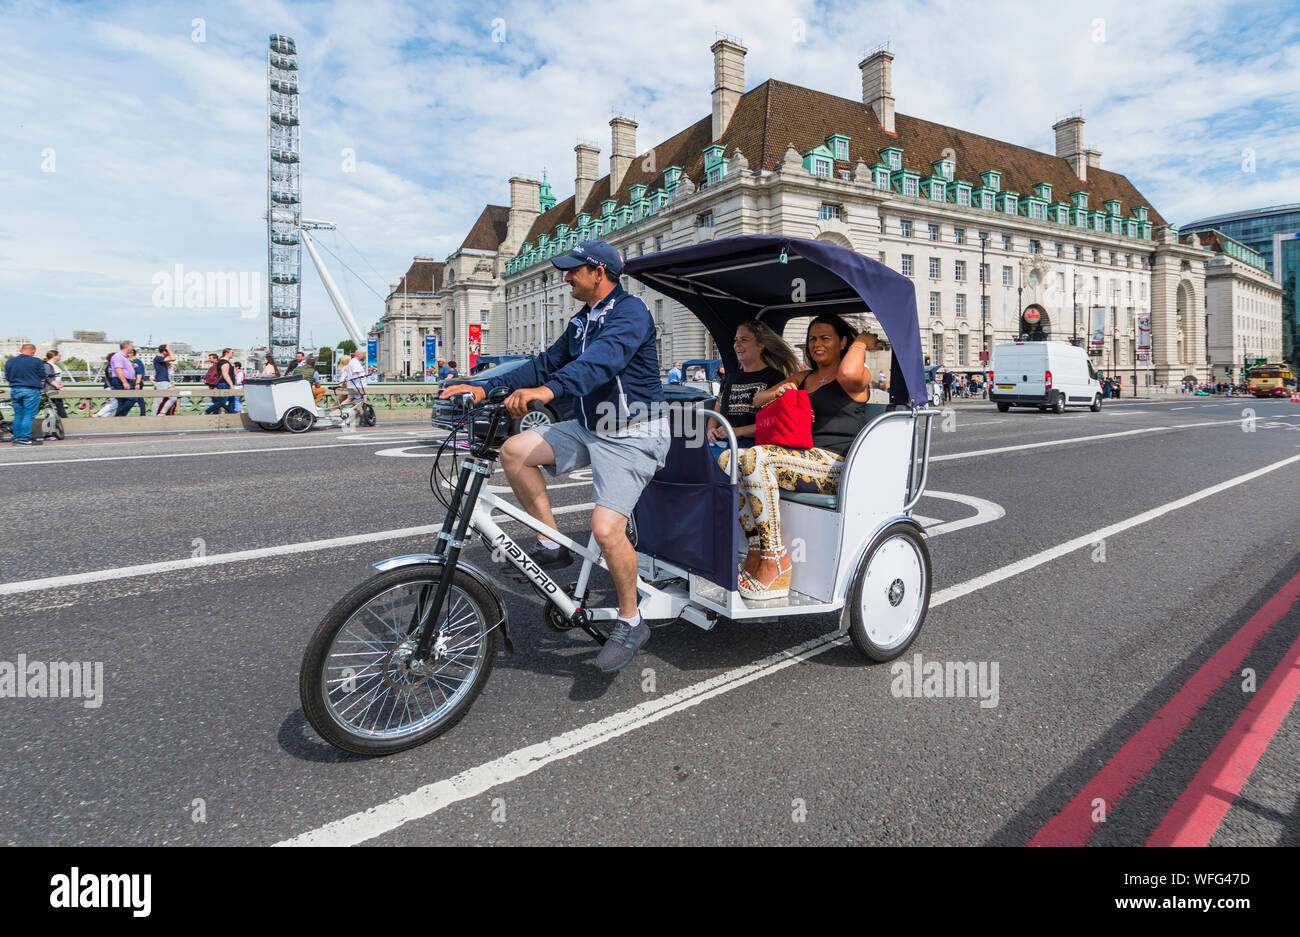 Touristen als Passagiere auf einem Sightseeing Fahrt in einer Rikscha oder Fahrradrikscha 3 Rädern über die Westminster Bridge in London, England, UK. Stockfoto